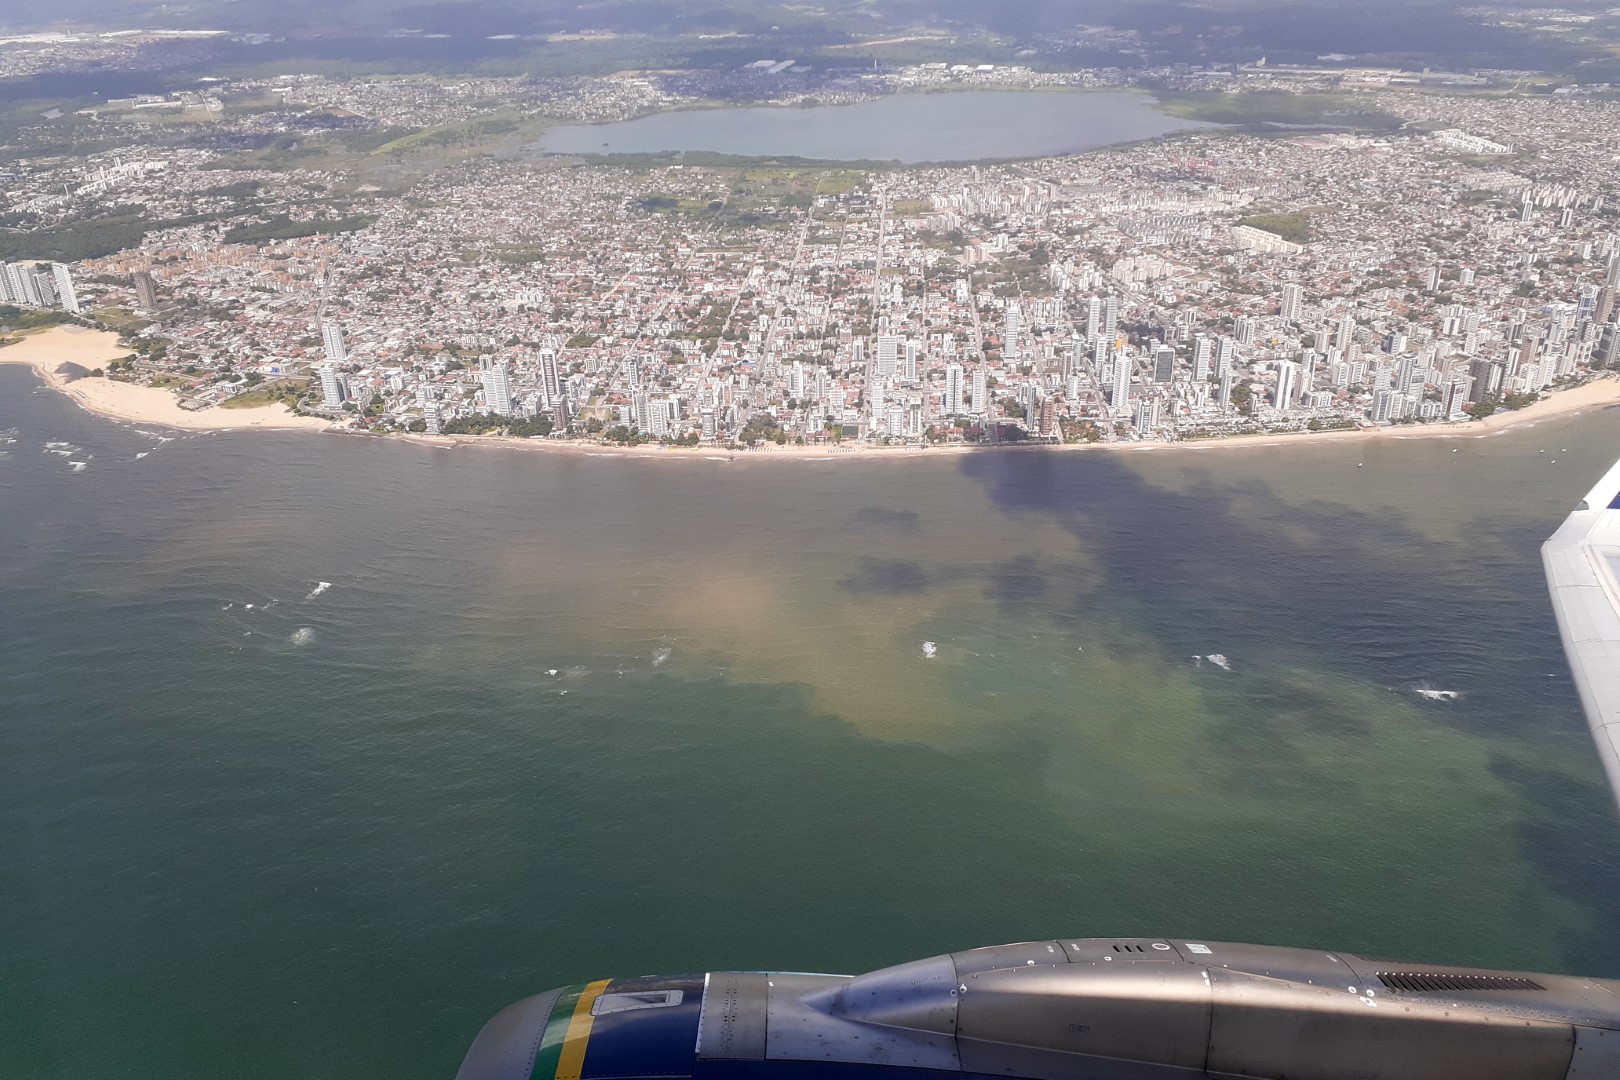 Flight 5024 REC - SDU, flying above Boa Viagem and Recife